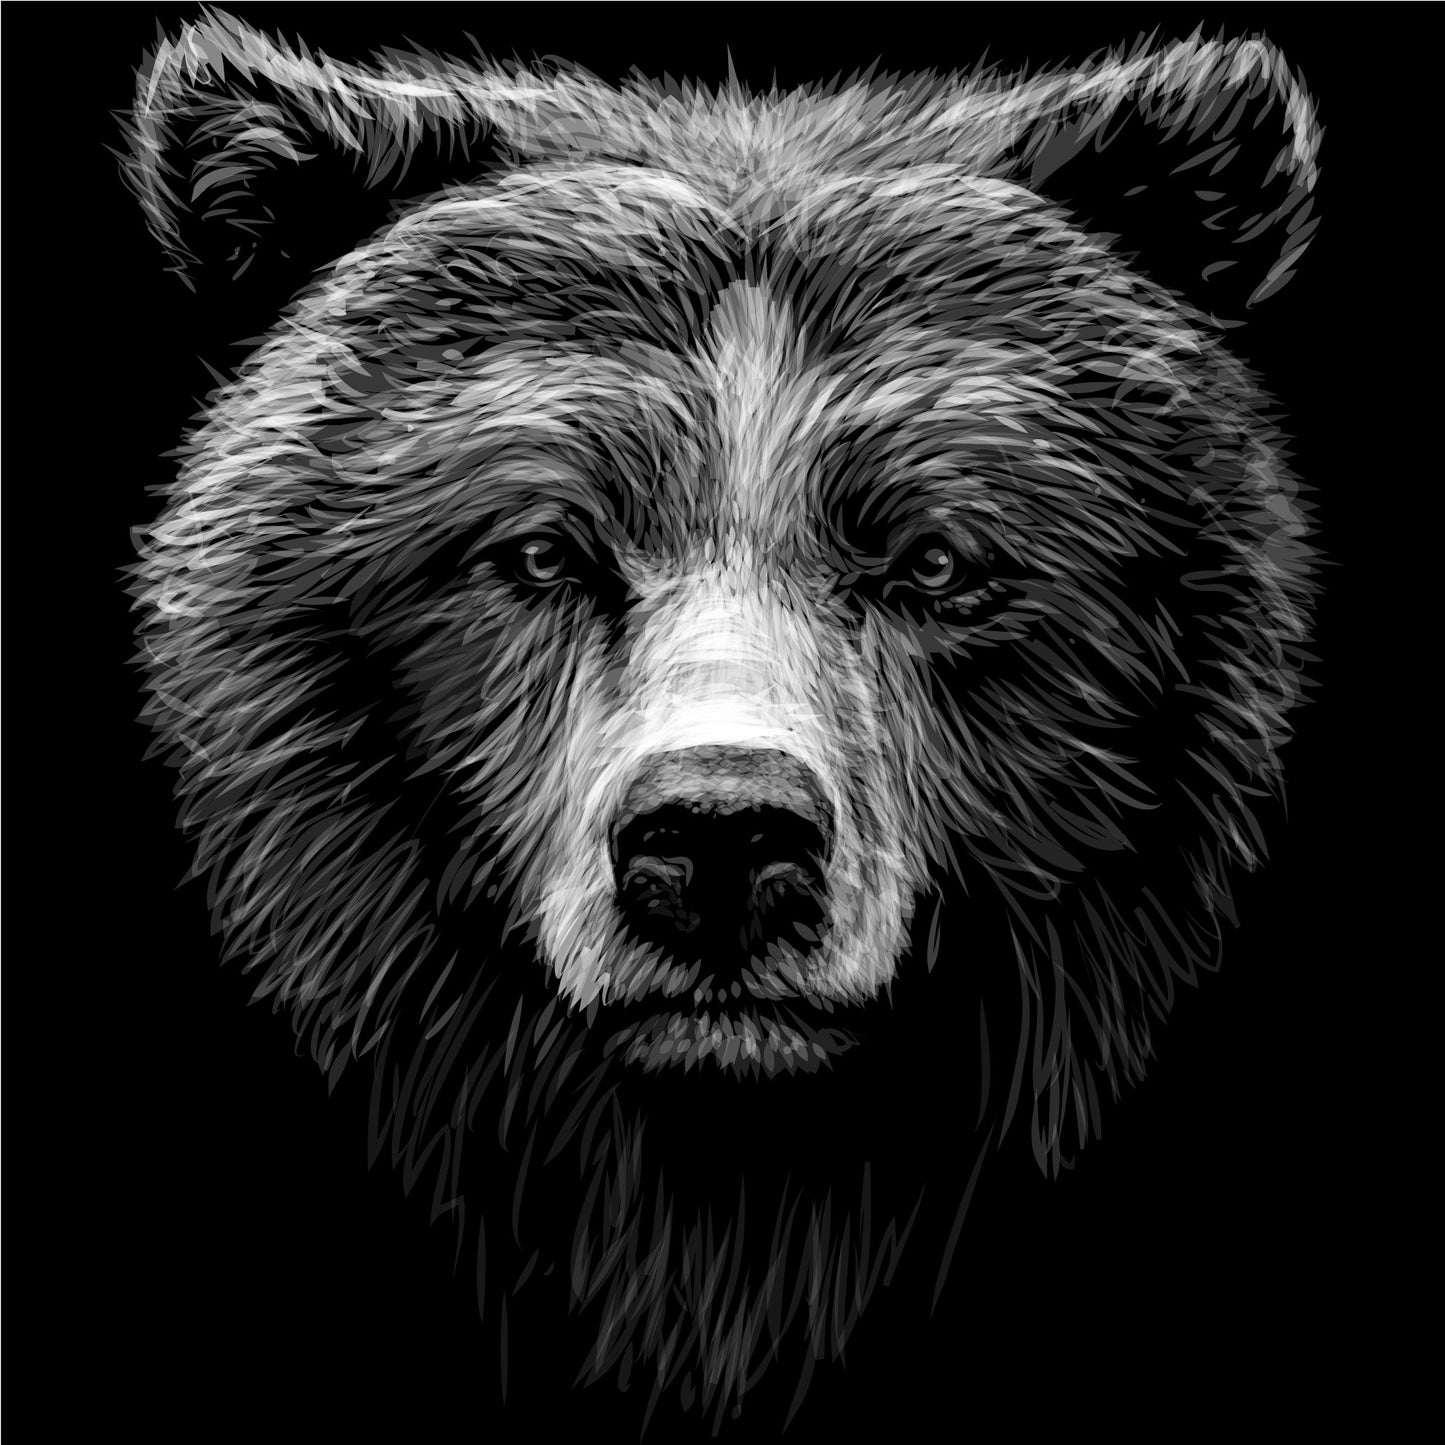 Women's Fashion Fit t-shirt - Big Bear